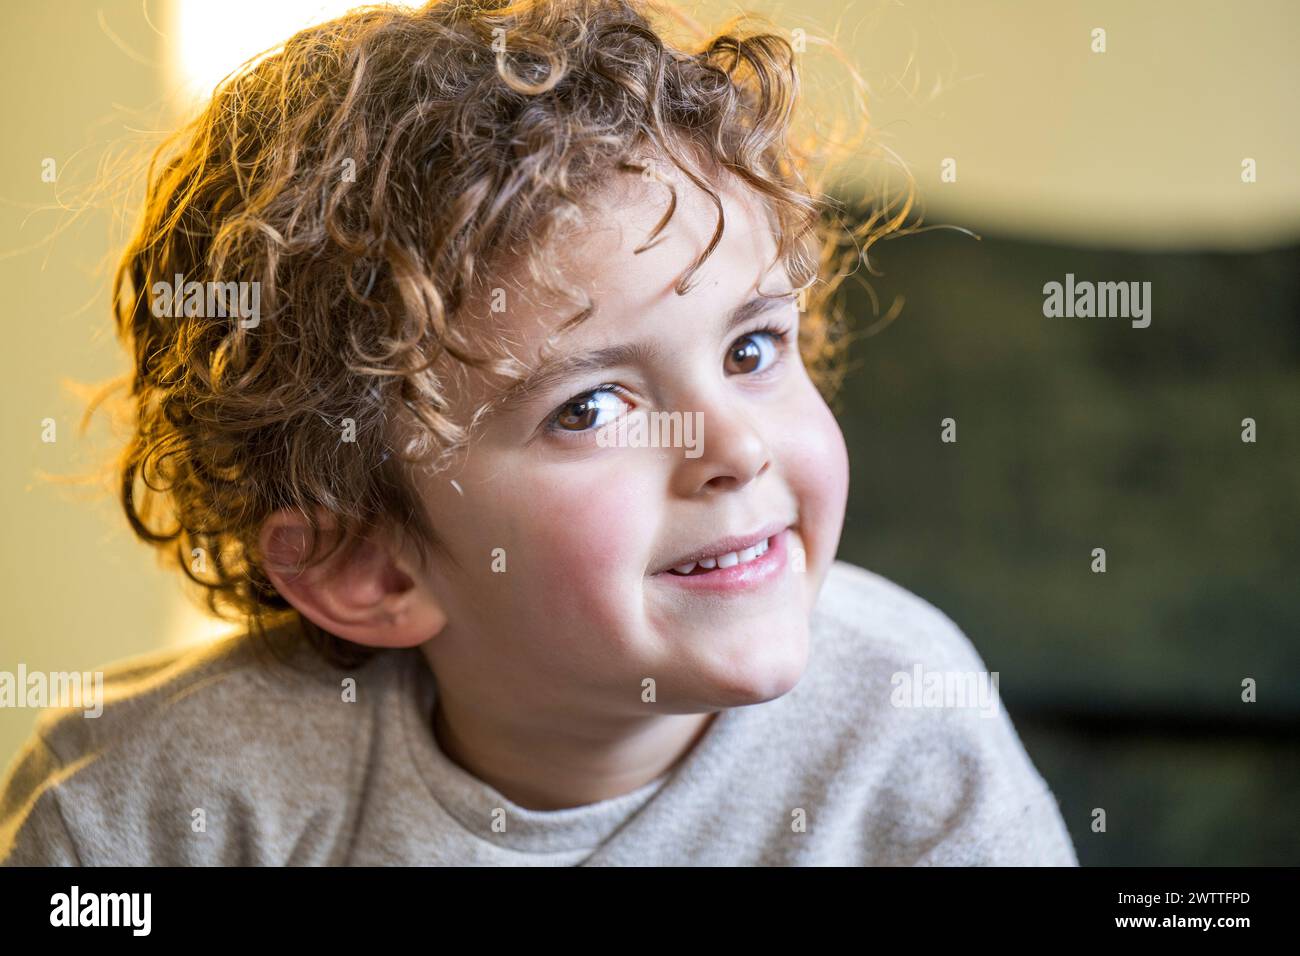 Lächelndes Kind mit lockigem Haar, das einen verspielten Moment genießt Stockfoto